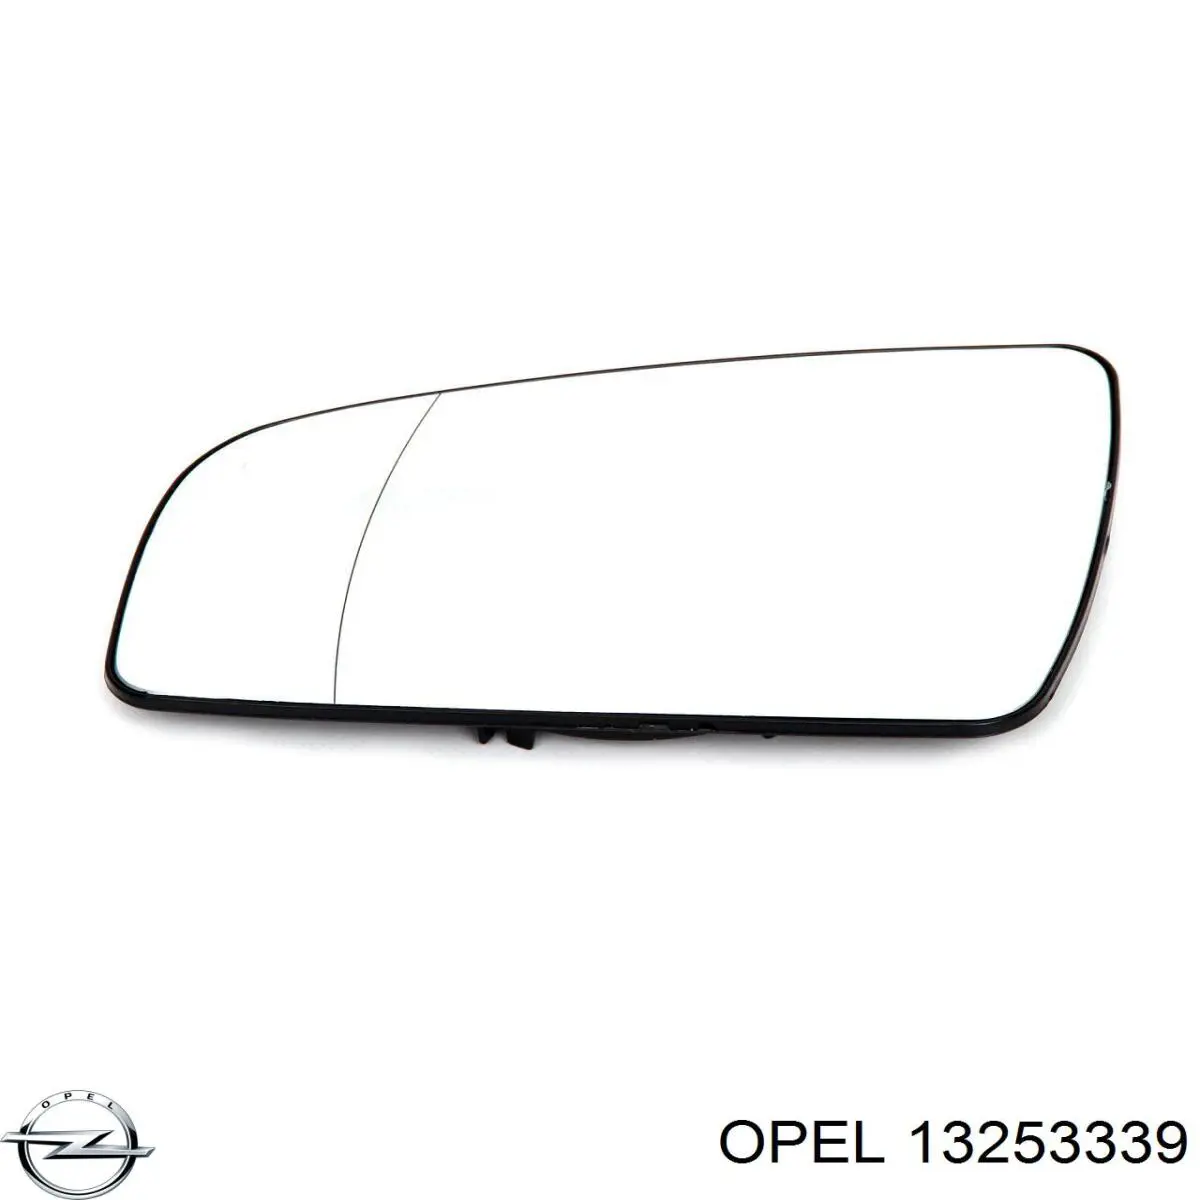 13253339 Opel espelho de retrovisão esquerdo